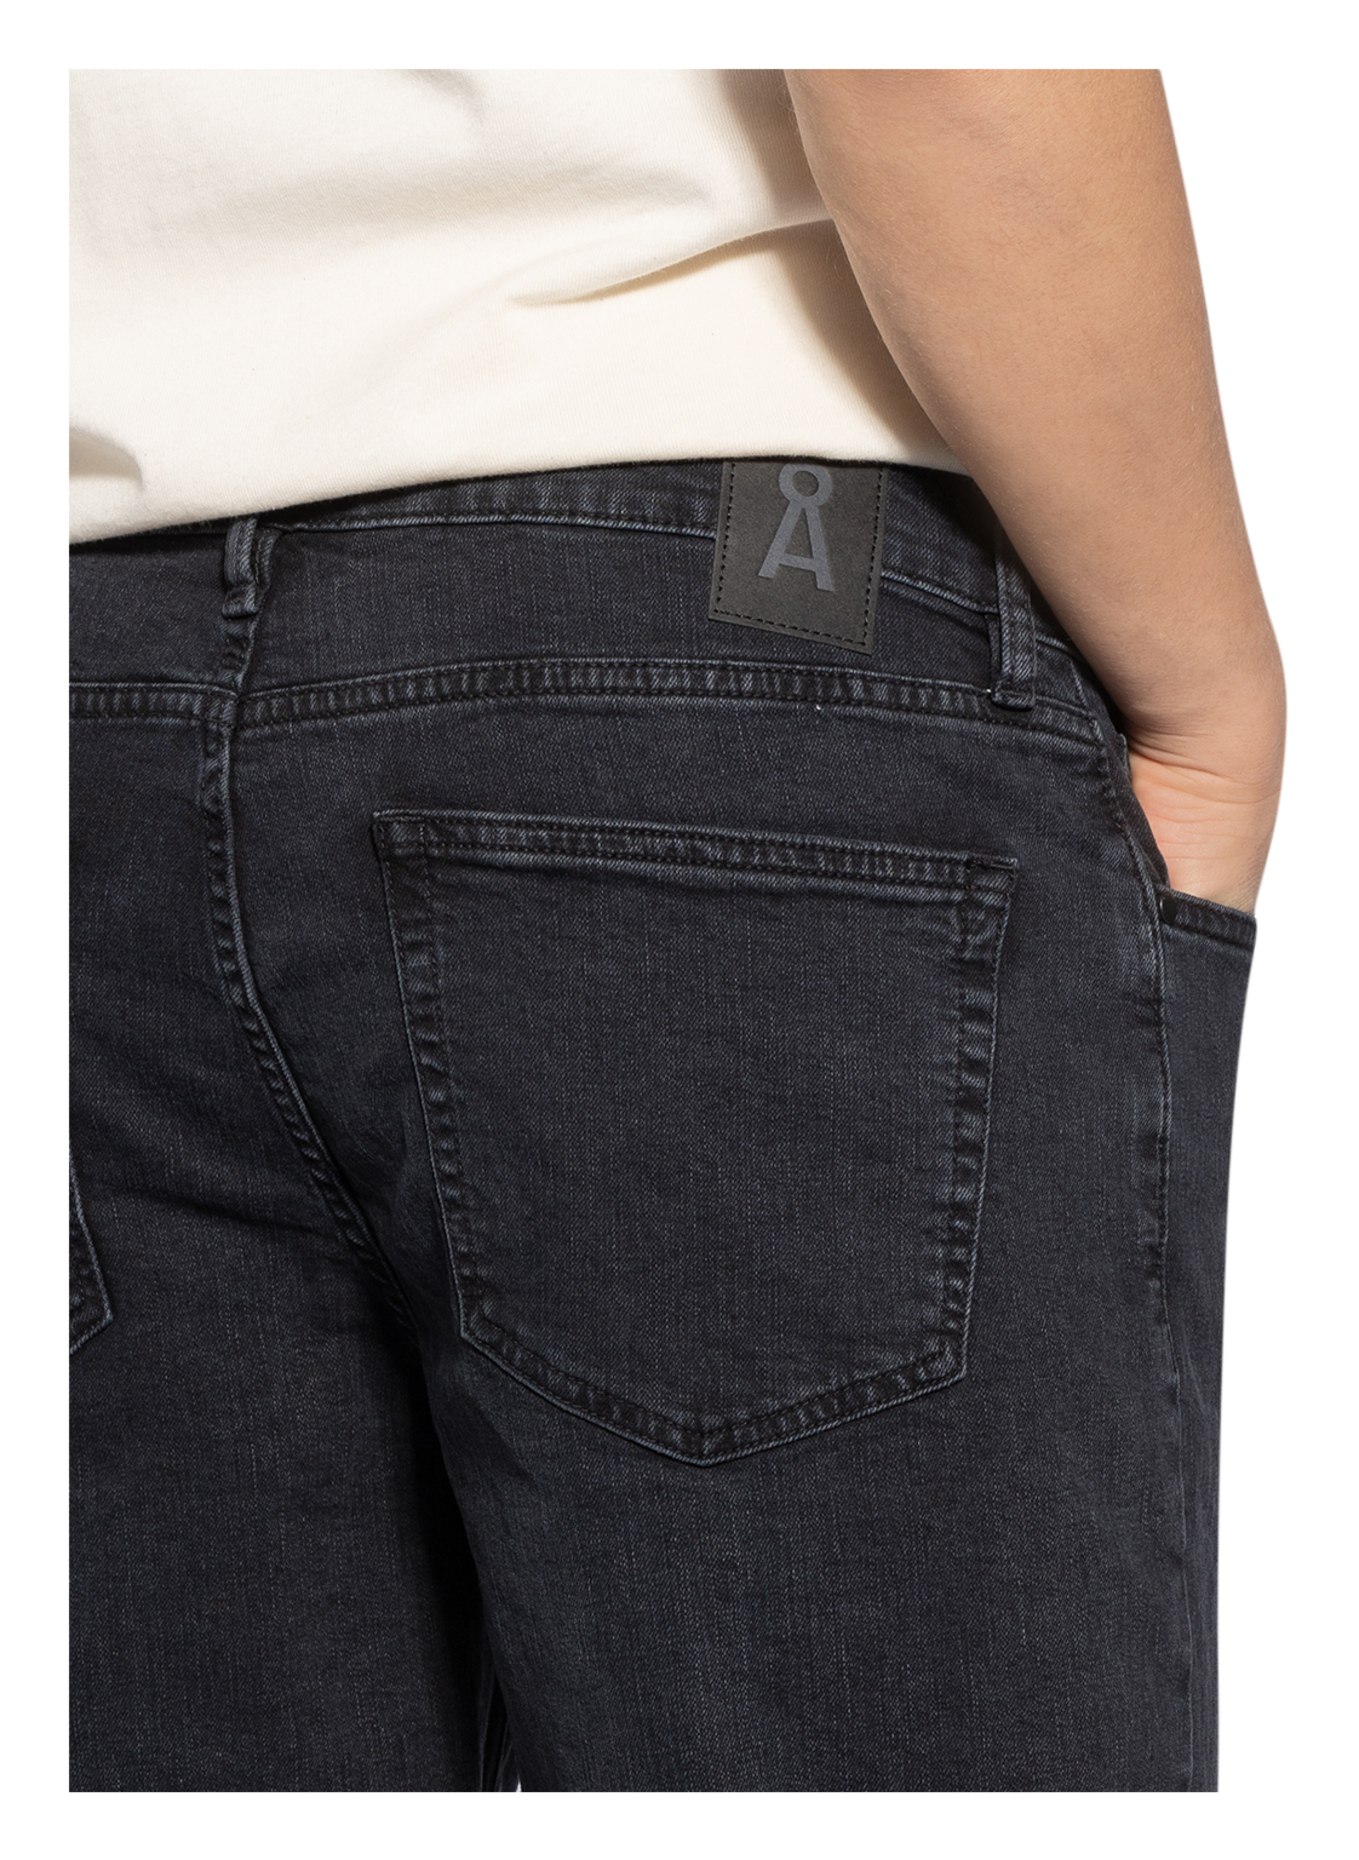 ARMEDANGELS Denim shorts NAIL slim fit, Color: 472 washed down black (Image 5)